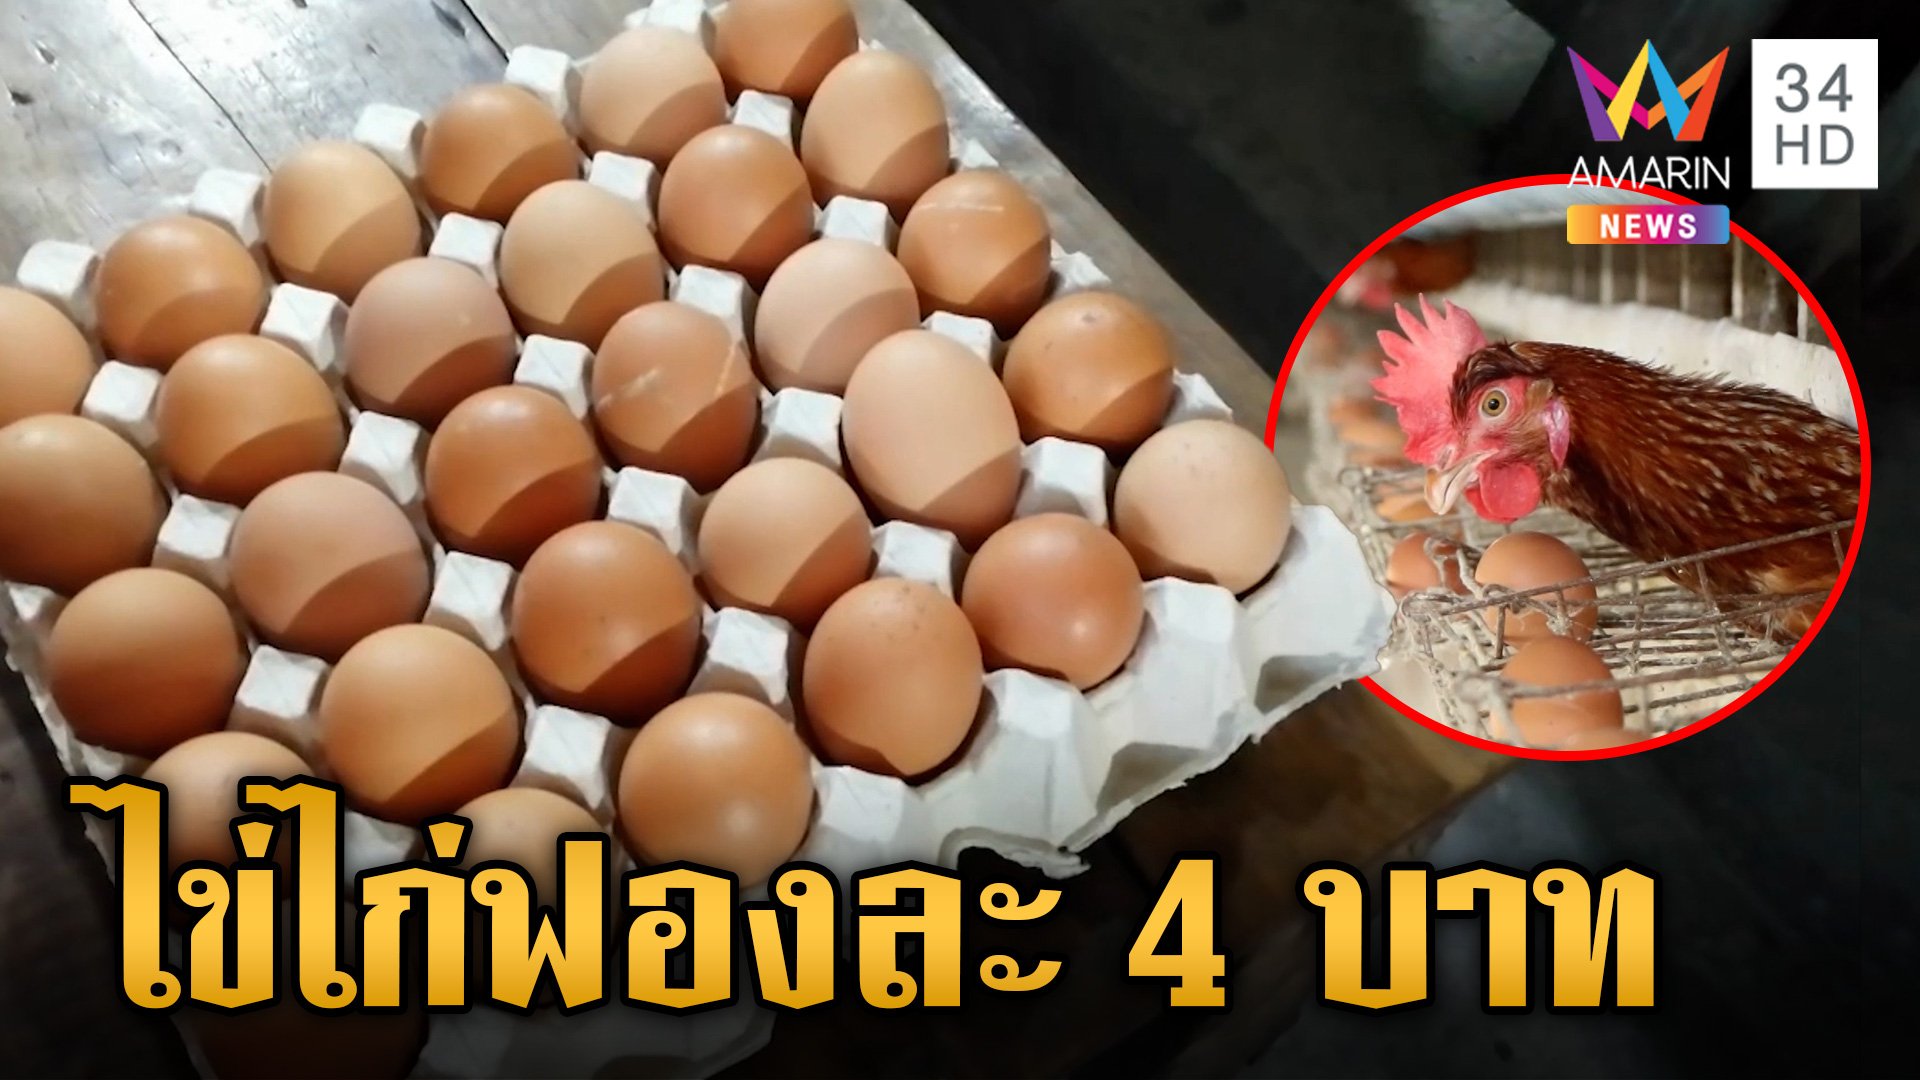 ผู้บริโภคอ่วม! ไข่ขึ้นราคาเป็นฟองละ 4 บาท มีผล 29 พ.ค. 67 | ข่าวเย็นอมรินทร์ | 28 พ.ค. 67 | AMARIN TVHD34